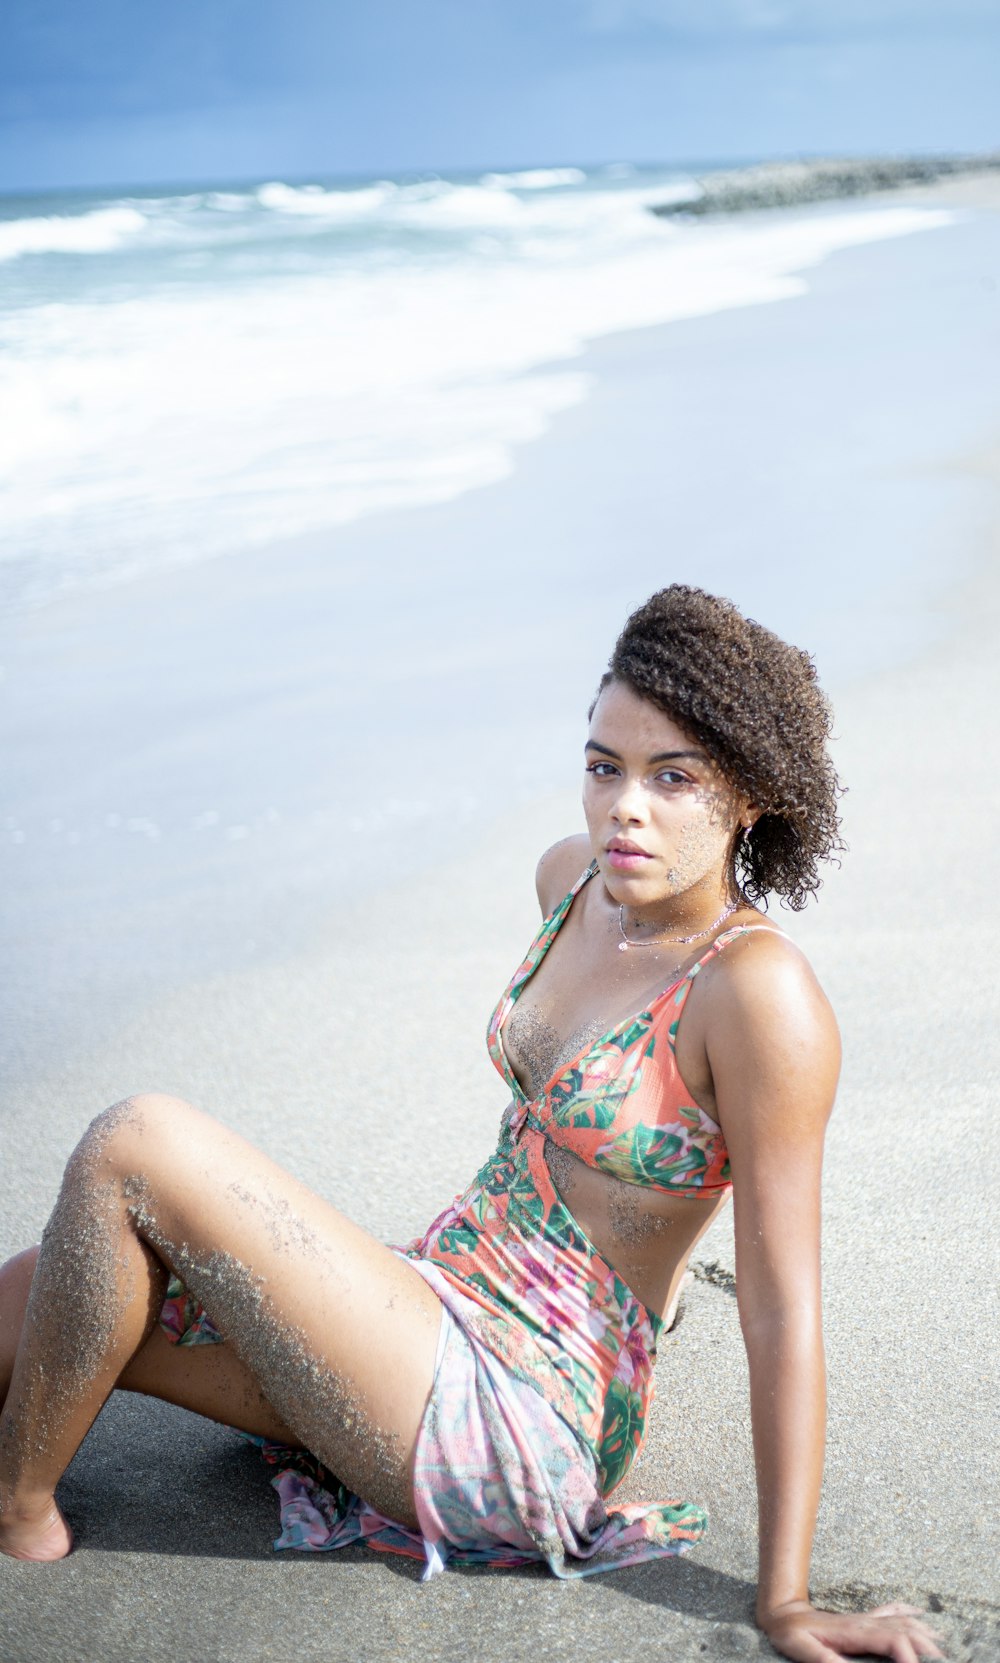 모래 위에 앉아있는 꽃무늬 수영복을 입은 여자